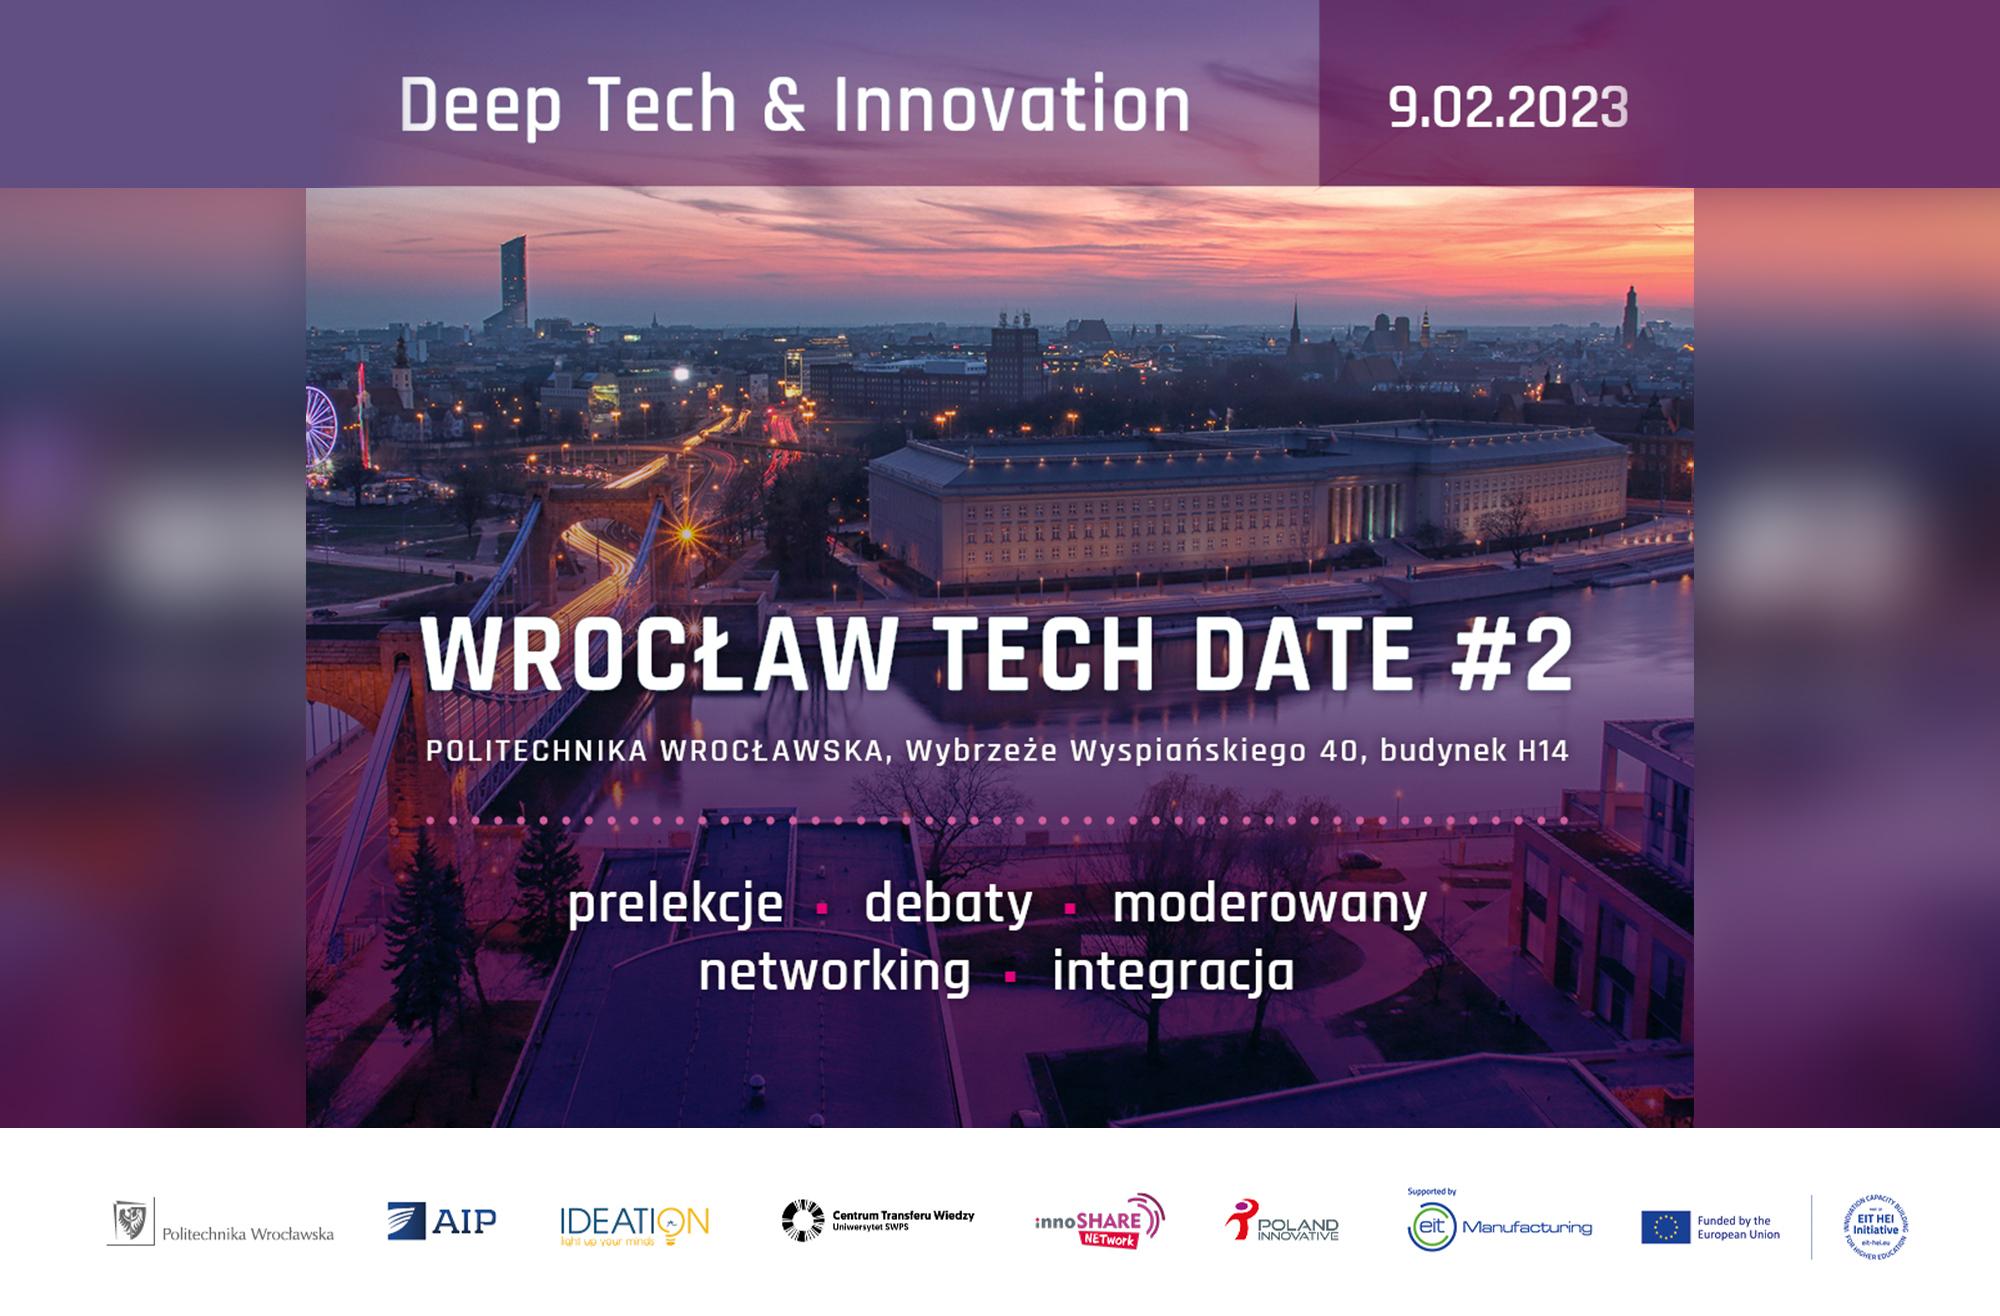 Wrocław Tech Date #2 – weź udział w networkingu i dyskusjach o deep techu